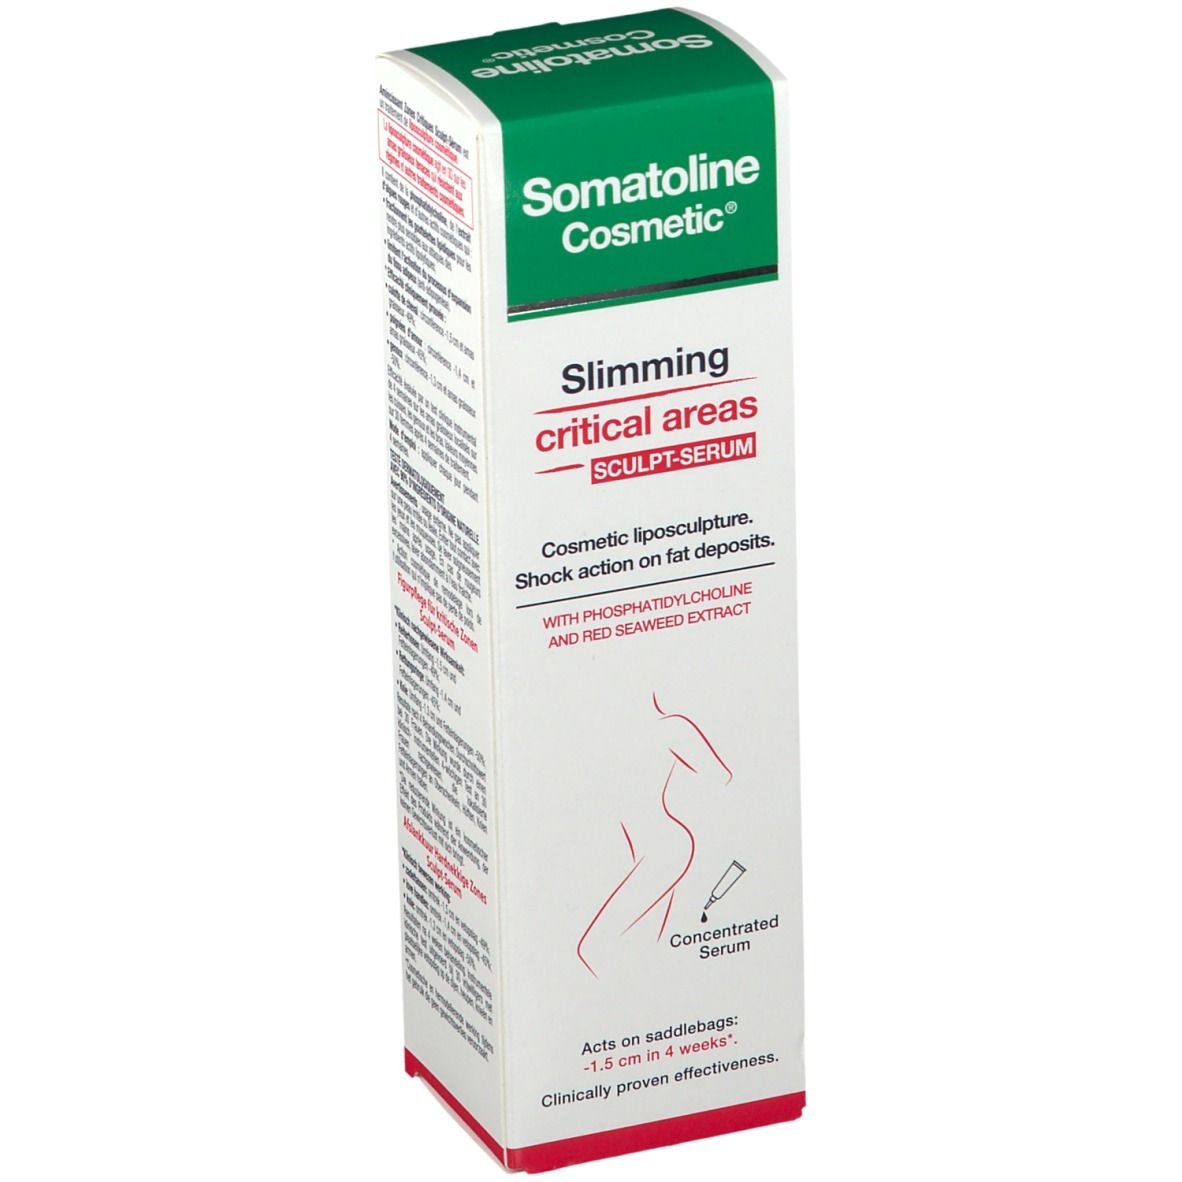 Somatoline Cosmetic® Sculpt-Serum